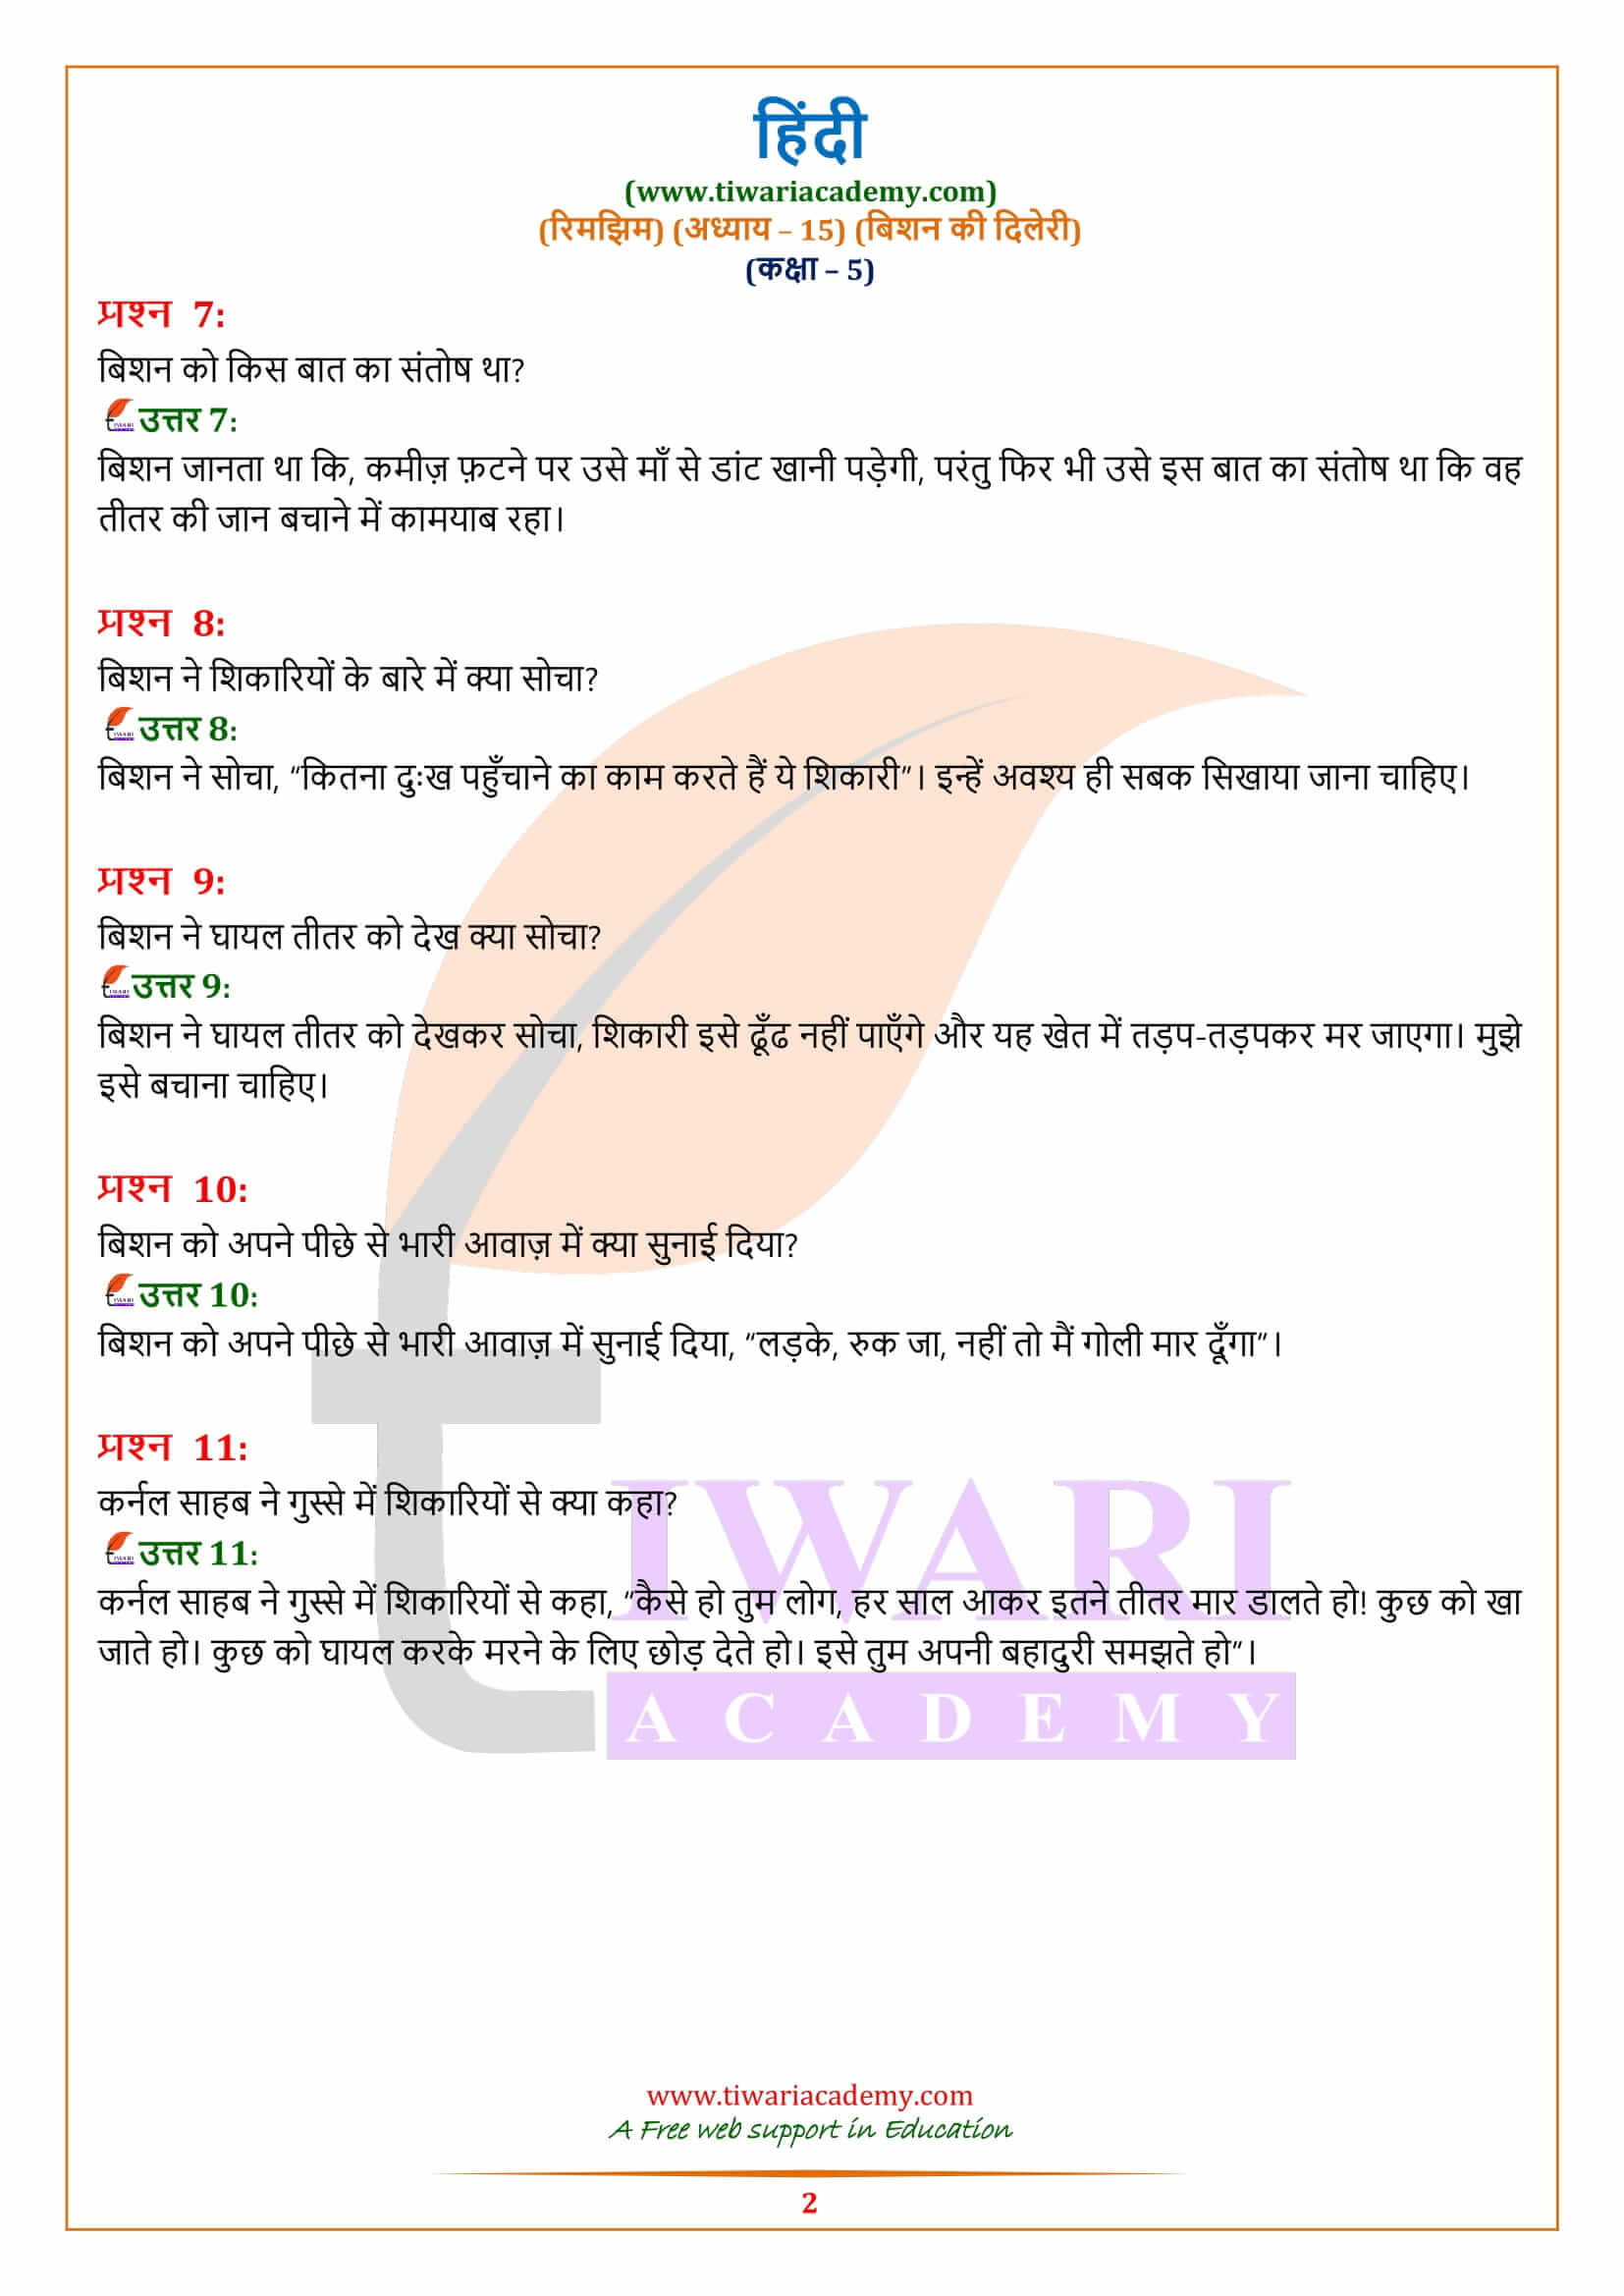 कक्षा 5 हिंदी अध्याय 15 बिशन की दिलेरी